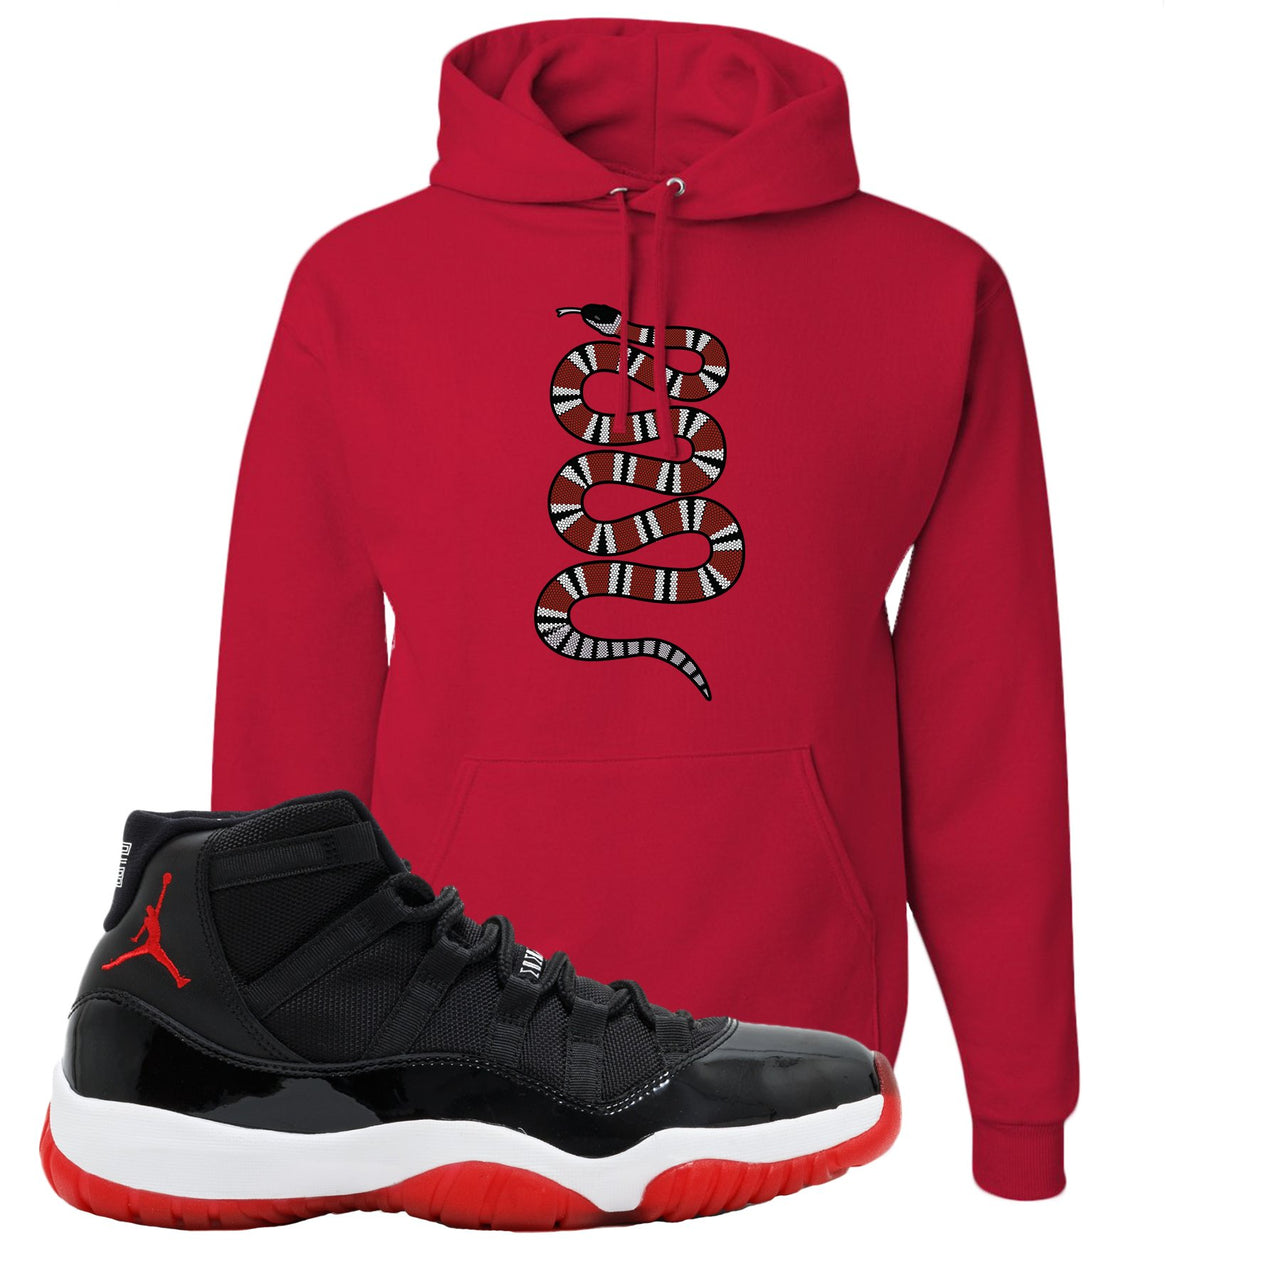 Jordan 11 Bred Coiled Snake Red Sneaker Hook Up Pullover Hoodie